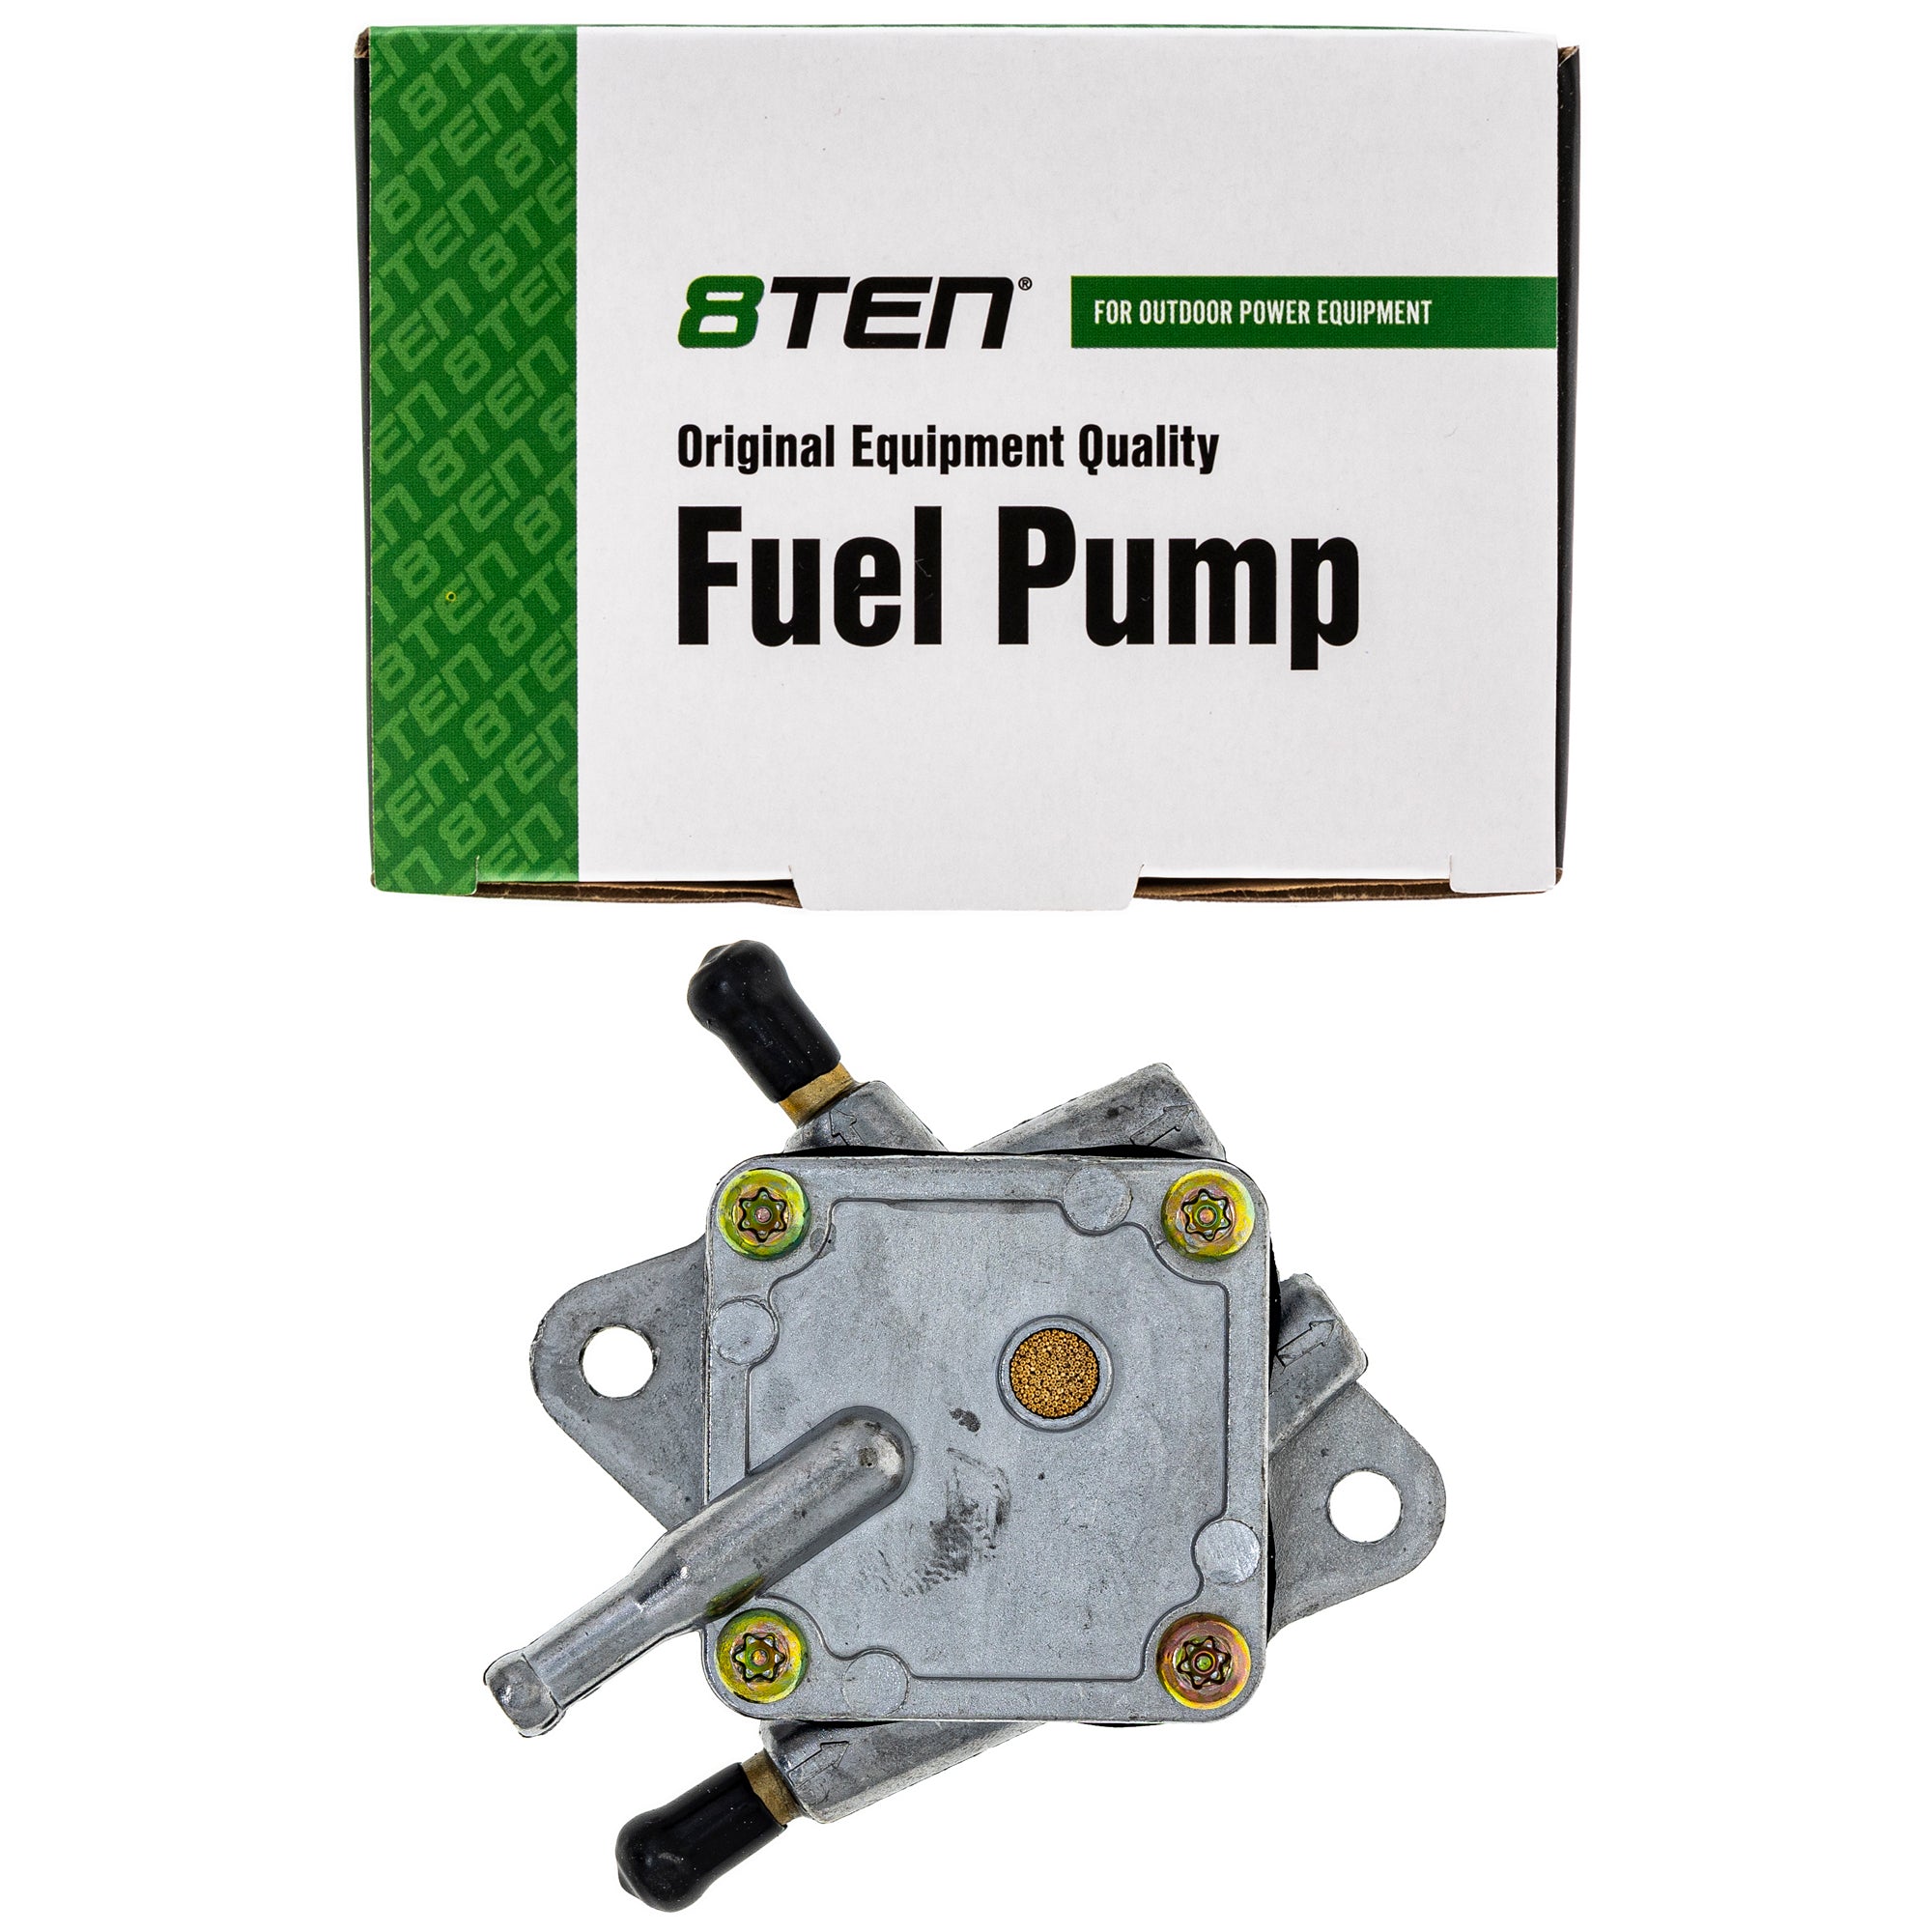 8TEN Fuel Pump Assembly 16700-ZJ1-003